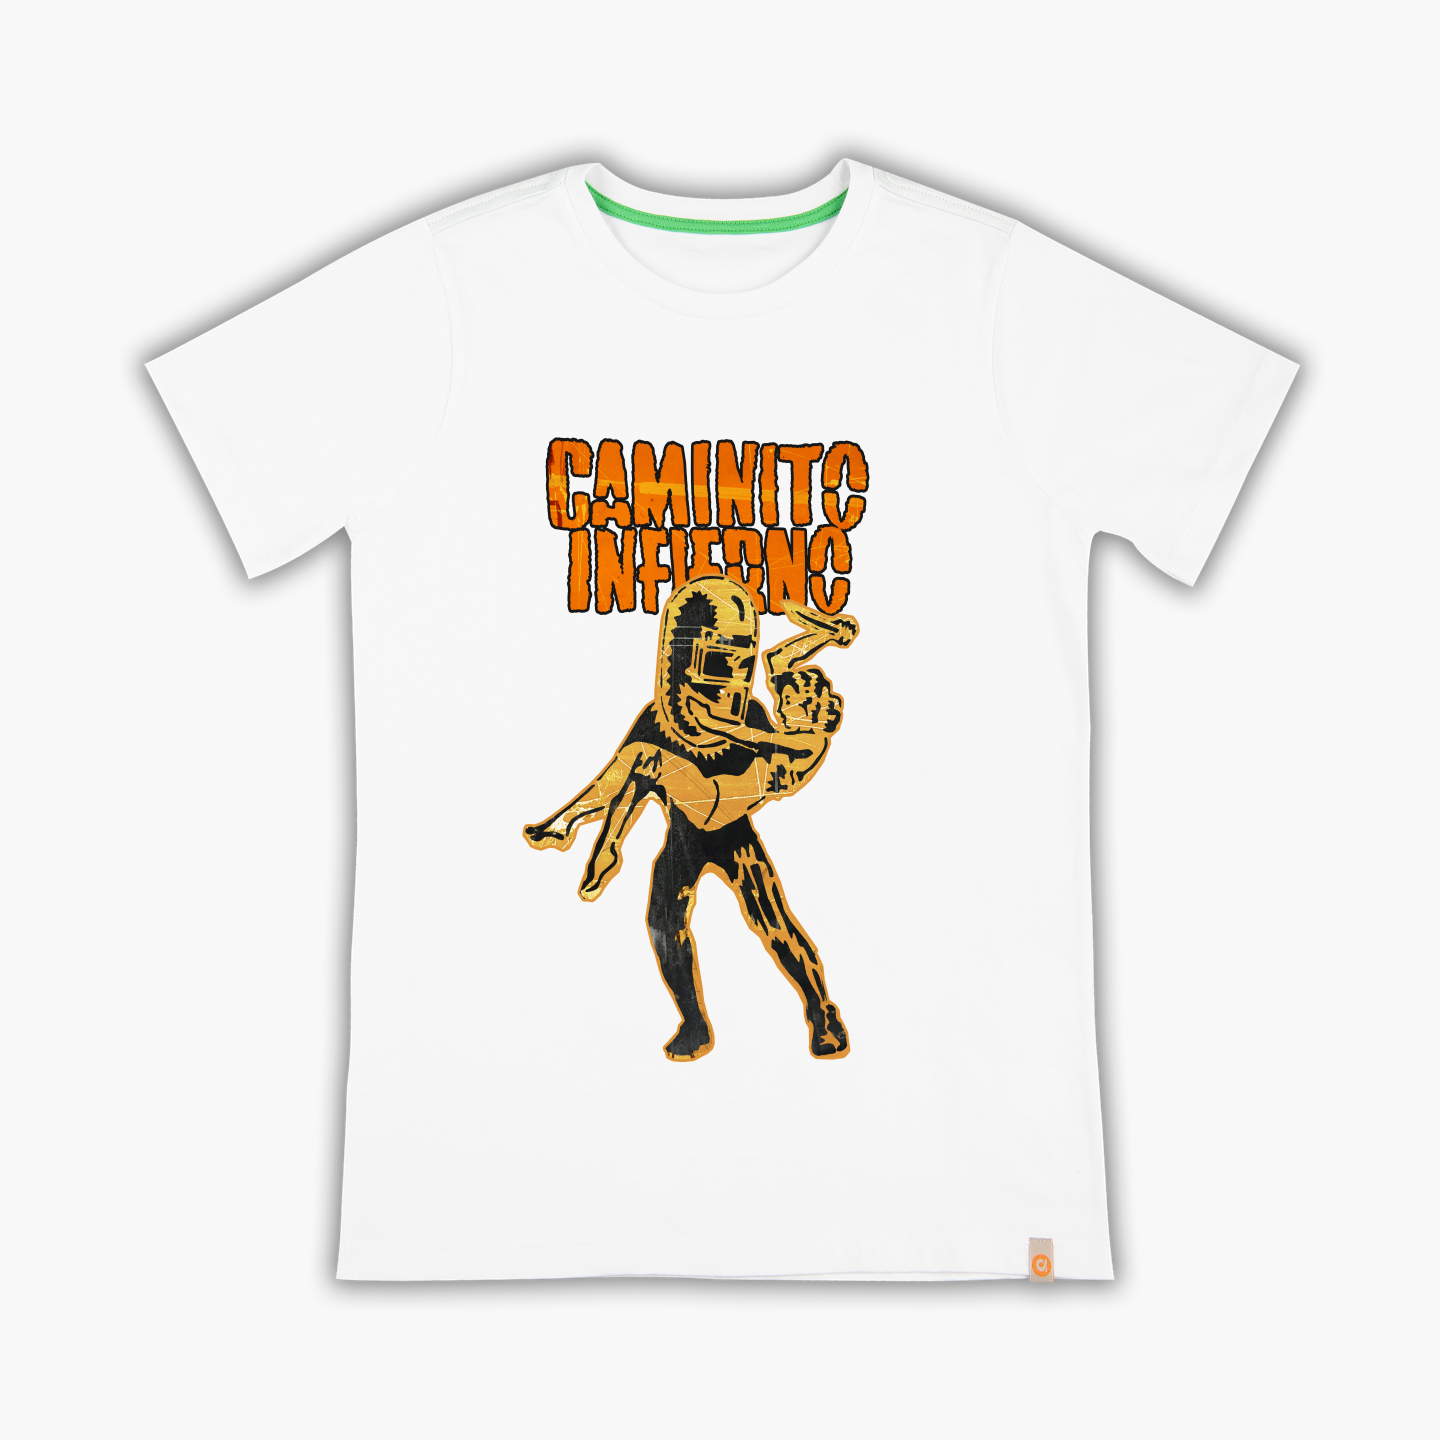 Caminito Inferno - Tişört